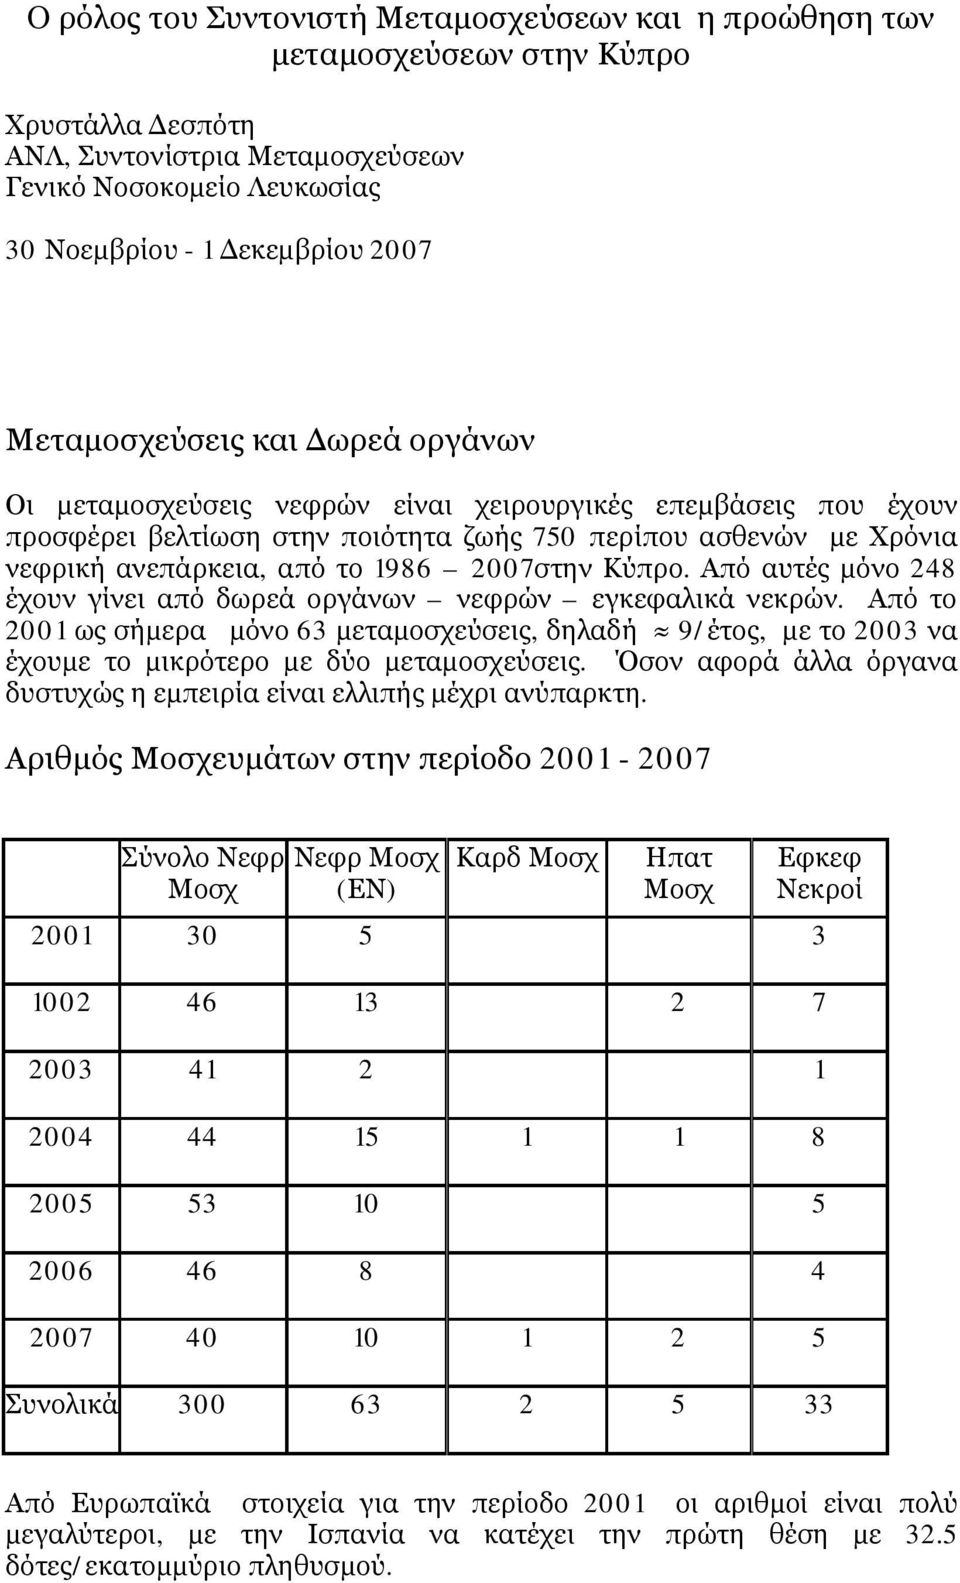 2007στην Κύπρο. Από αυτές μόνο 248 έχουν γίνει από δωρεά οργάνων νεφρών εγκεφαλικά νεκρών.